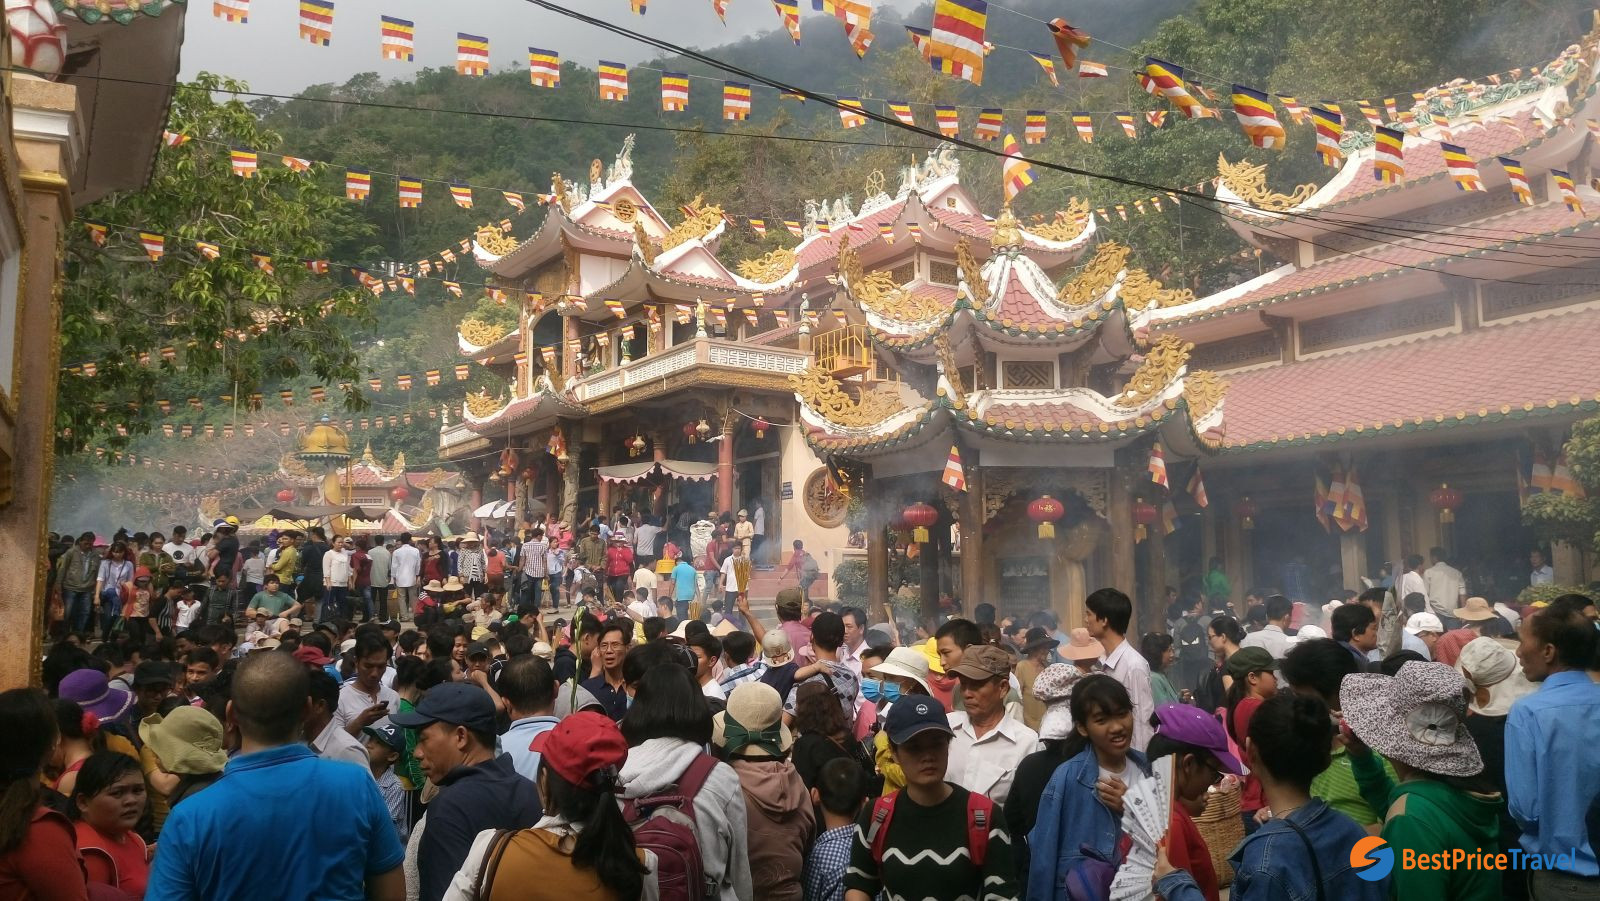 People come to Ba Den mountain Spring Festival